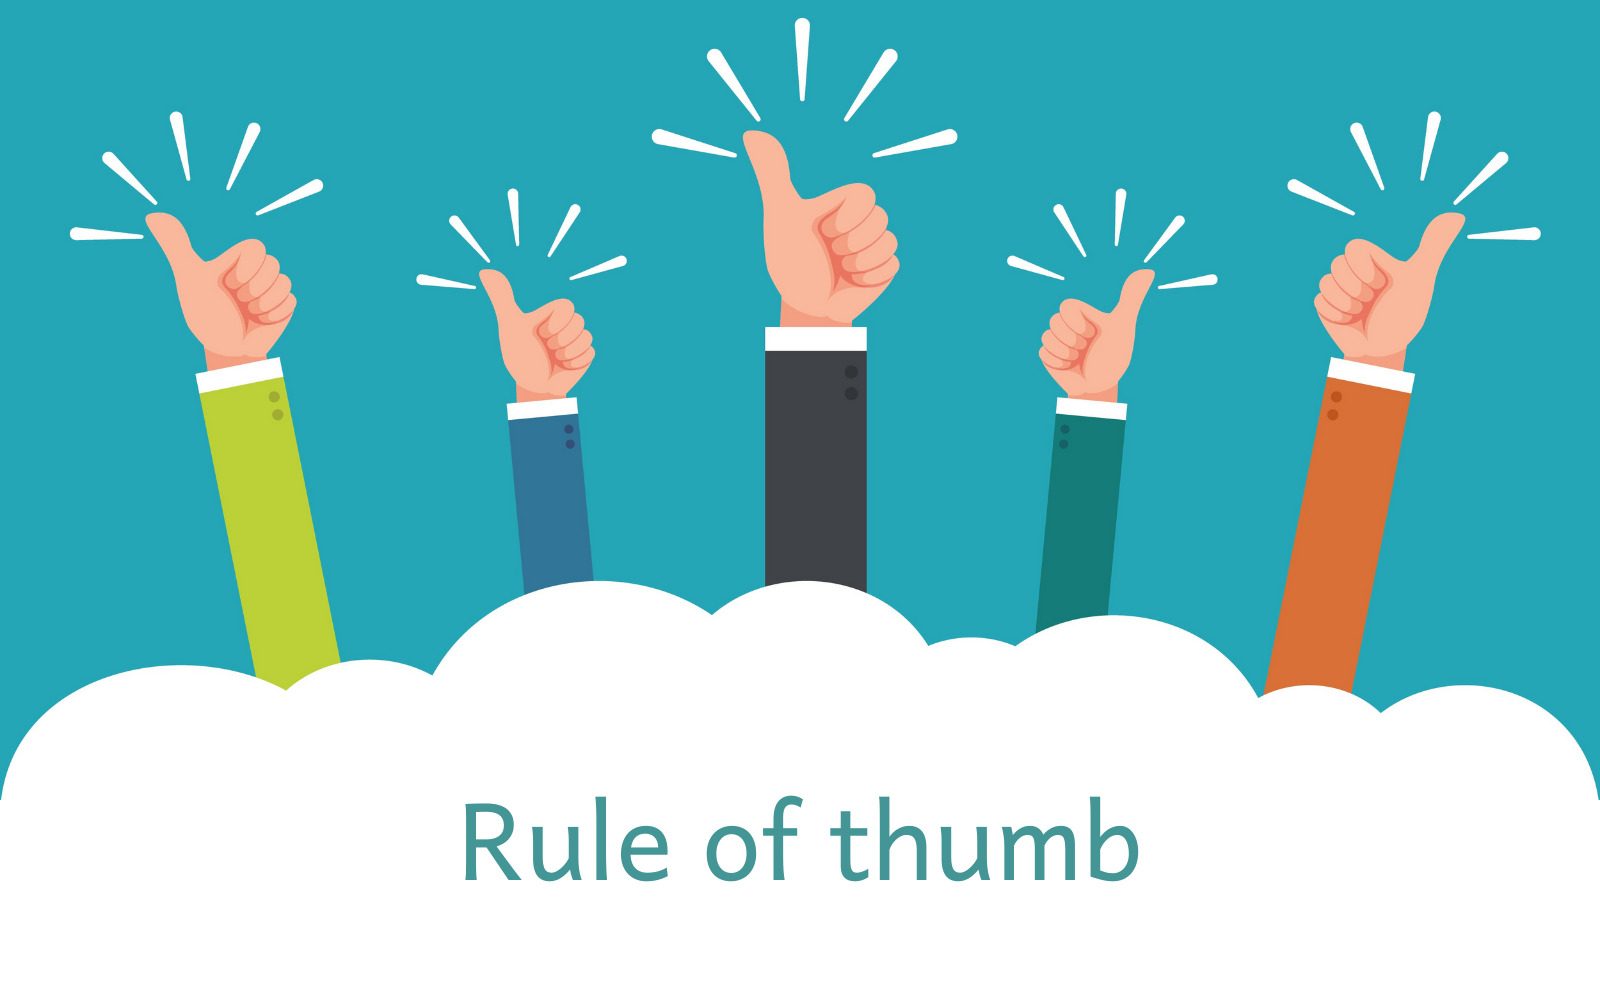 Quy tắc may rủi (Rule of thumb) là gì?